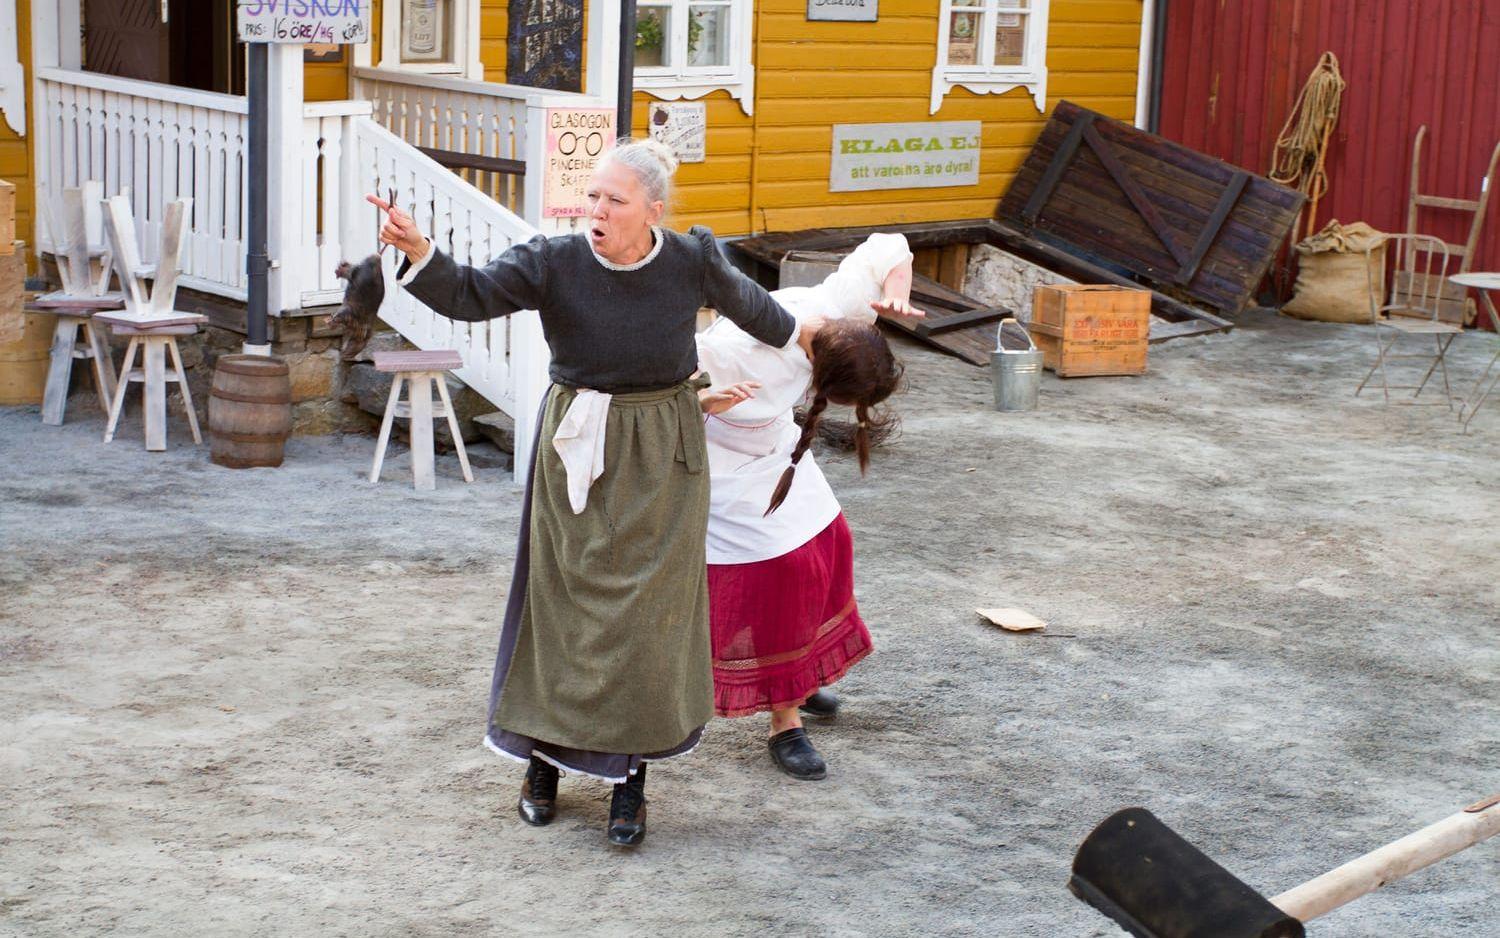 Sviskon och besvär. Med den gamla lanthandeln i Hasslöv som en fantastisk kuliss var det i juli premiär för lustspelet Sviskon och besvär, som har engagerat massor av människor i byn. Bild: Carina Nilsson